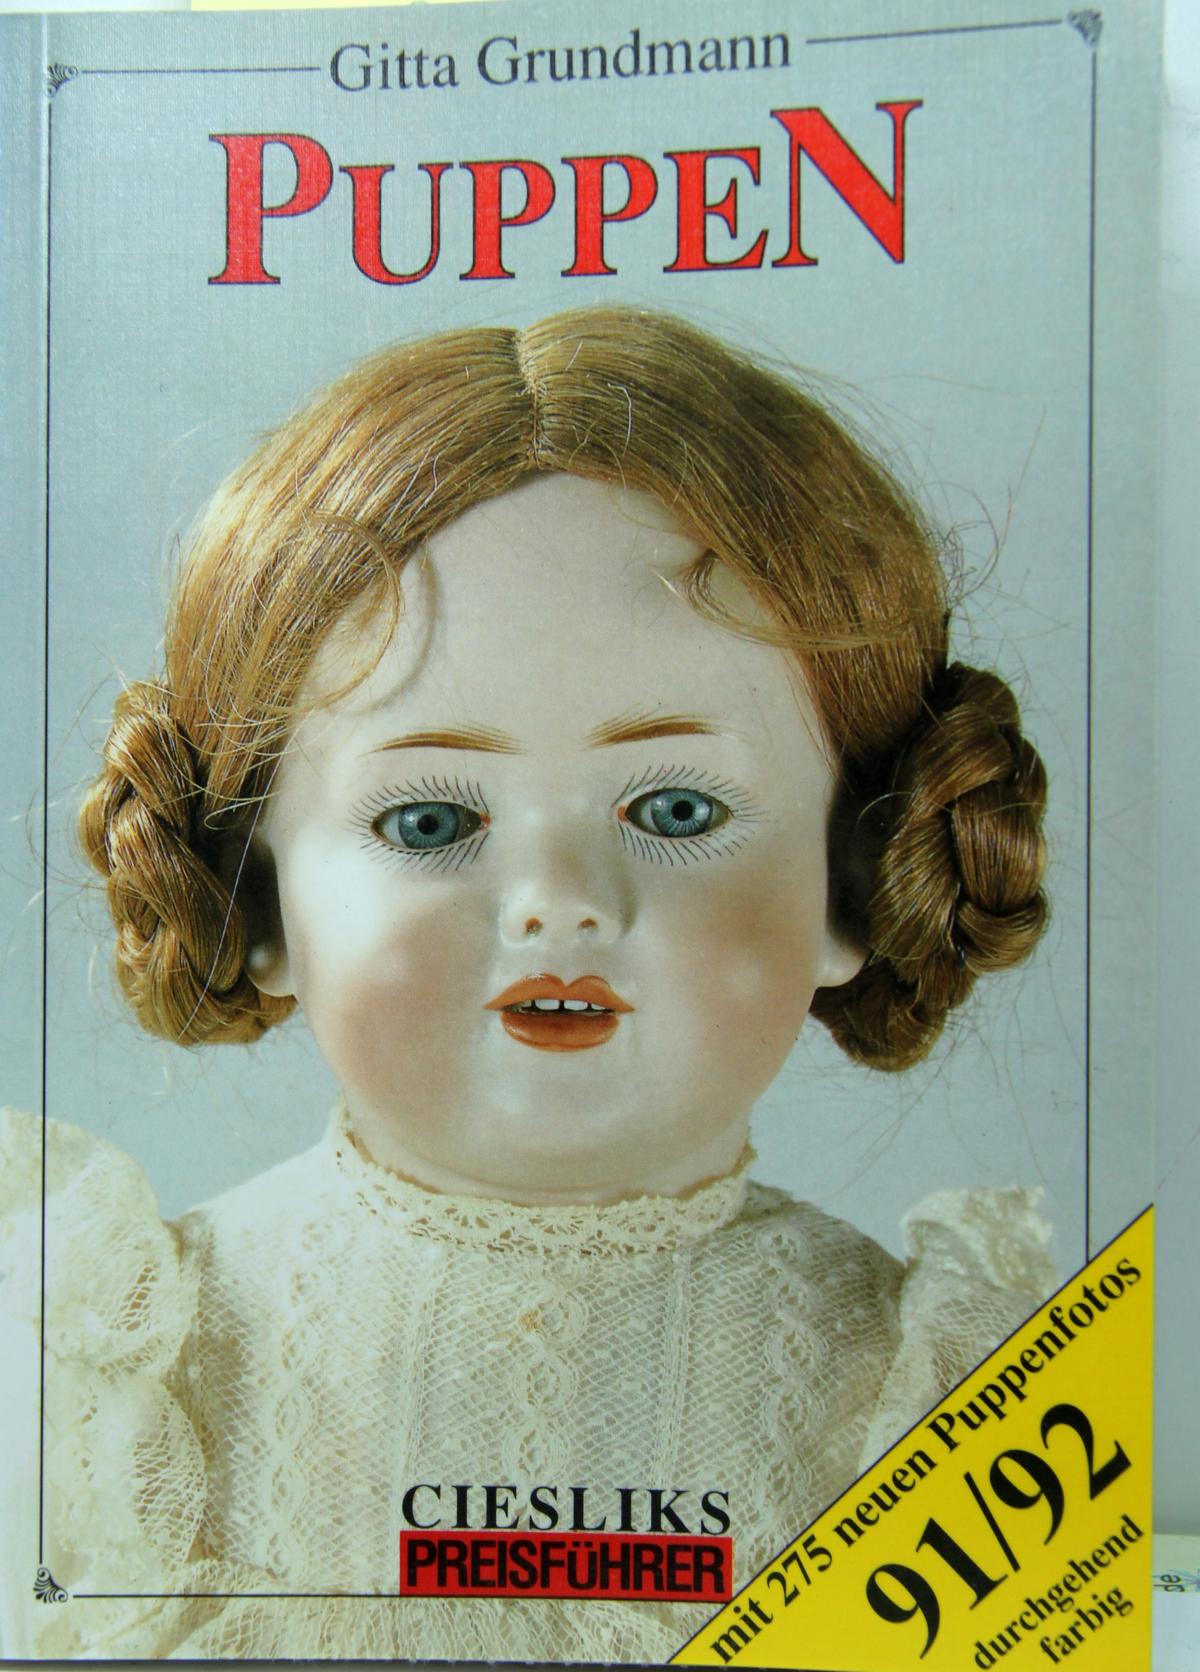 Buch "Puppen" Preisführer 91/92 G. Grundmann, Verlag, Cieslik. 